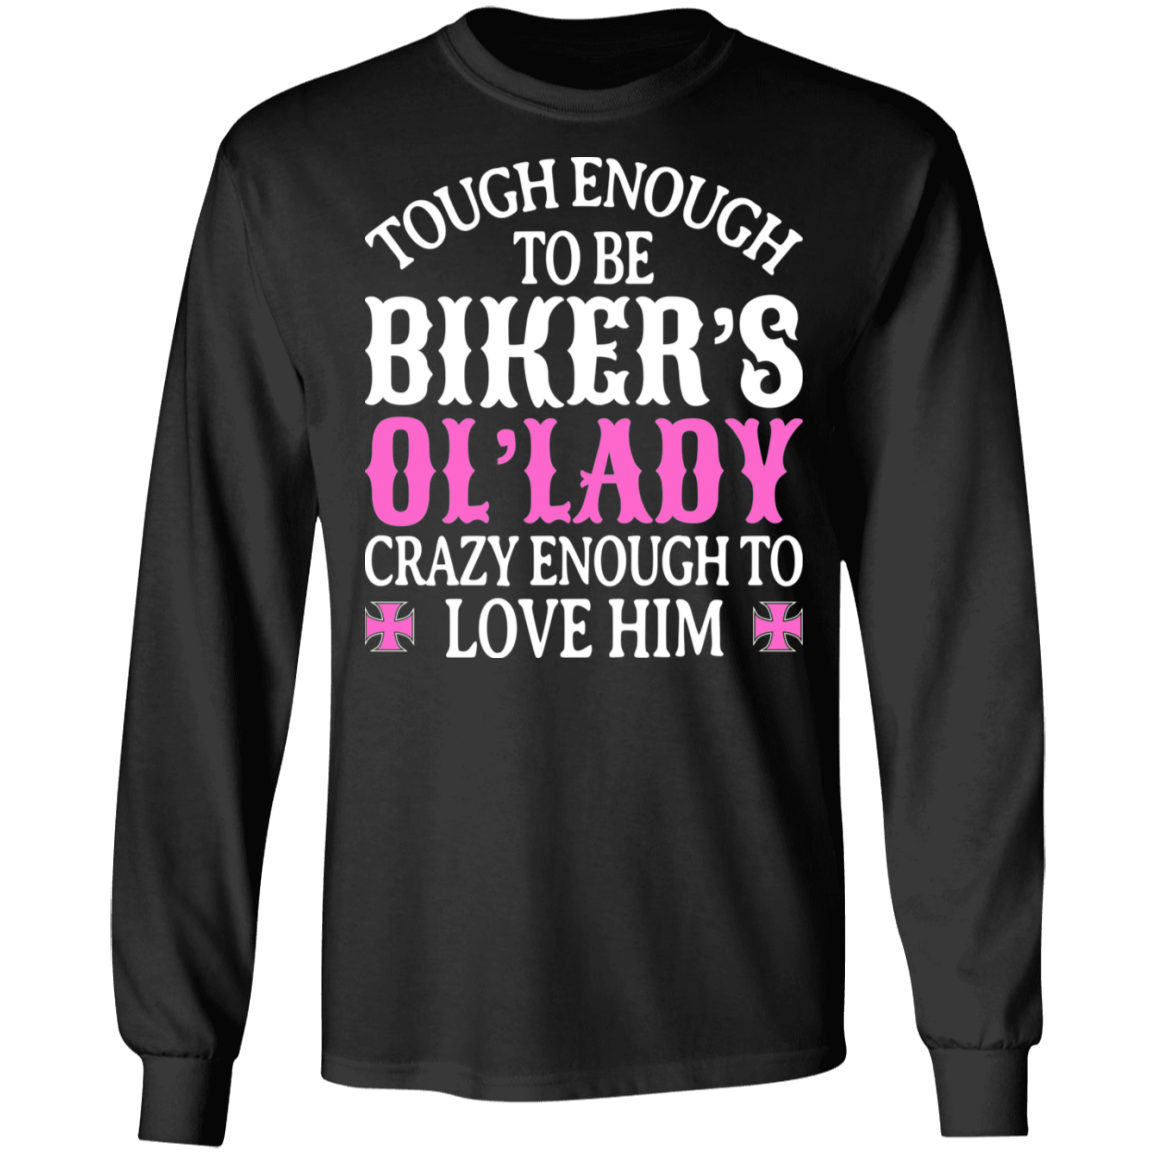 Tough enough to be biker's 'ol lady Shirt